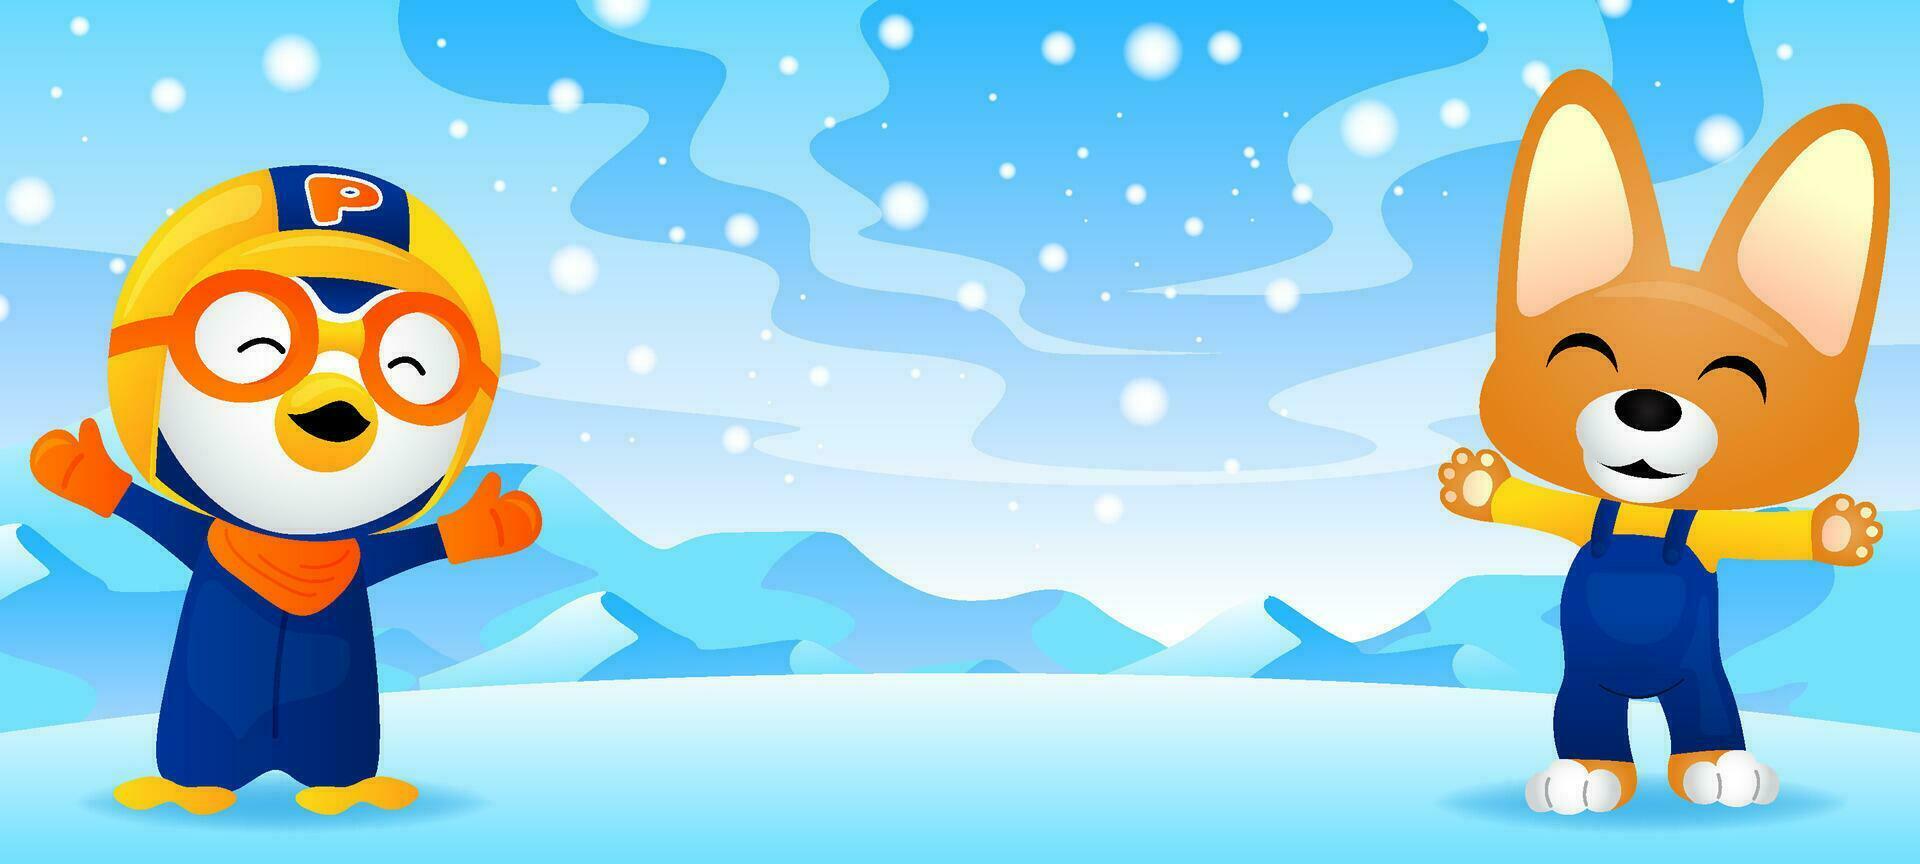 linda pequeño pingüino y linda zorro en el nieve vector